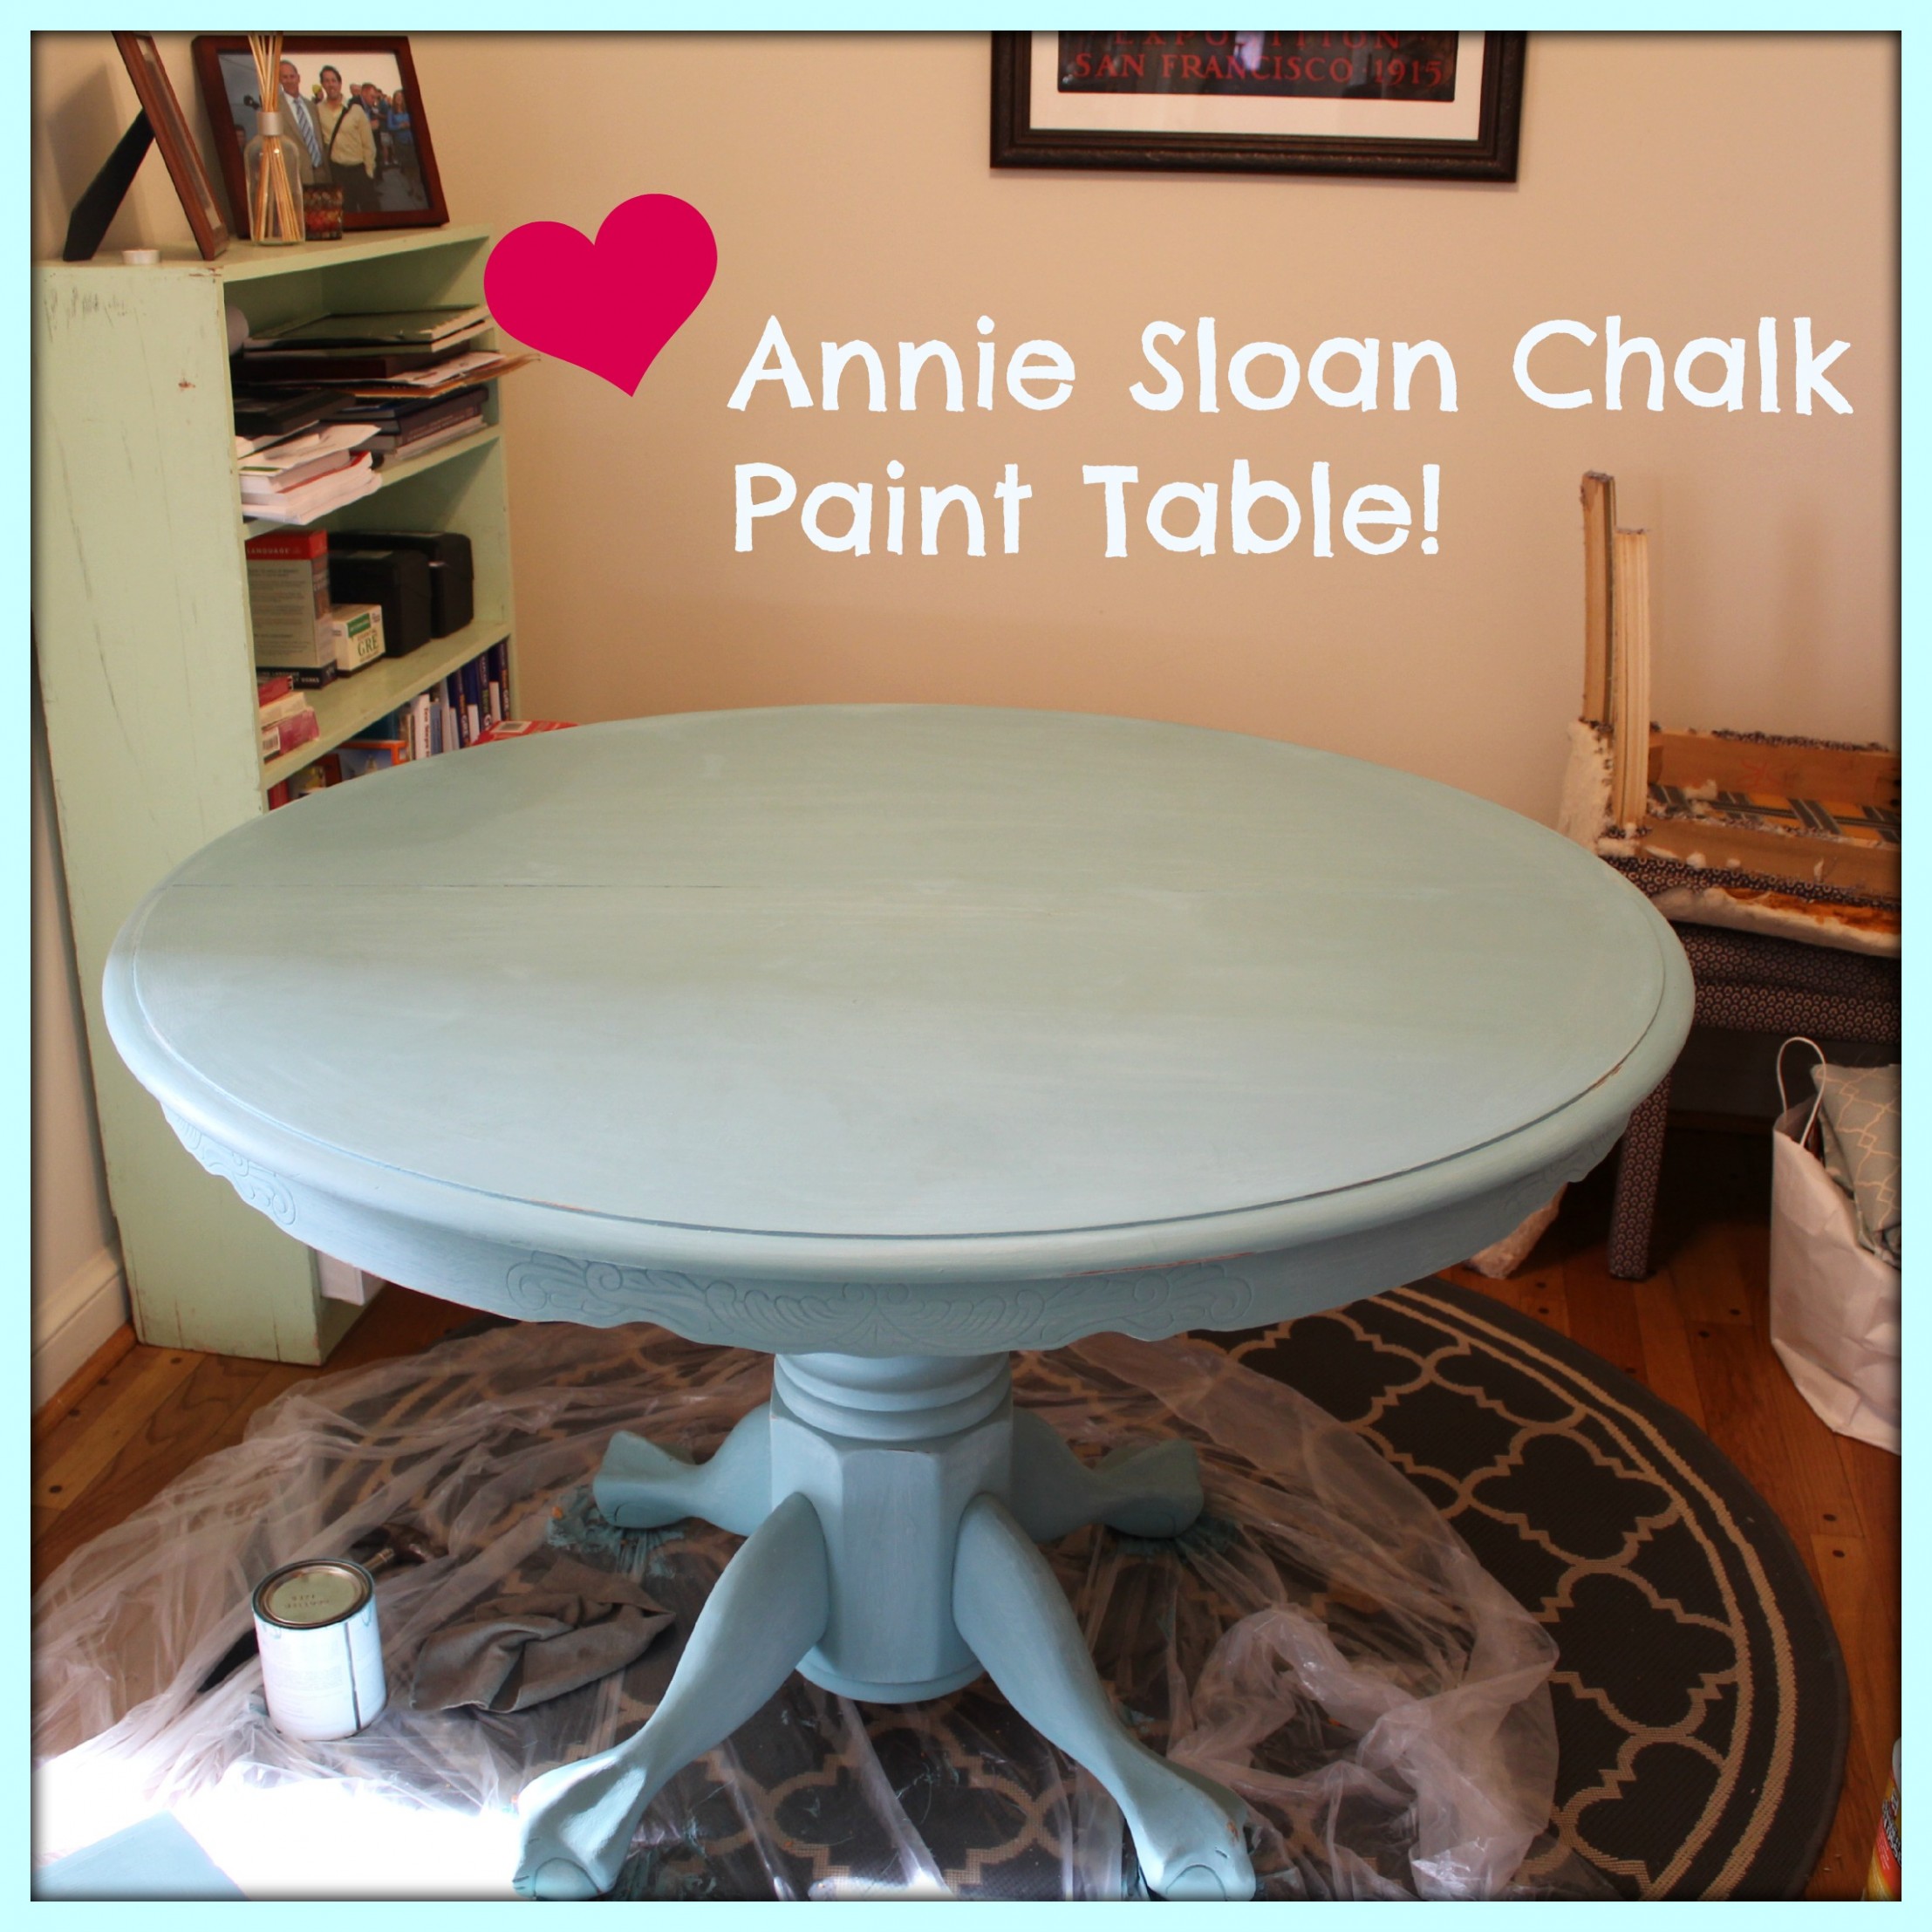 Annie Sloan Chalk Paint Ashland Va | Gypsy Soul Ideas For Annie Sloan Chalk Paint